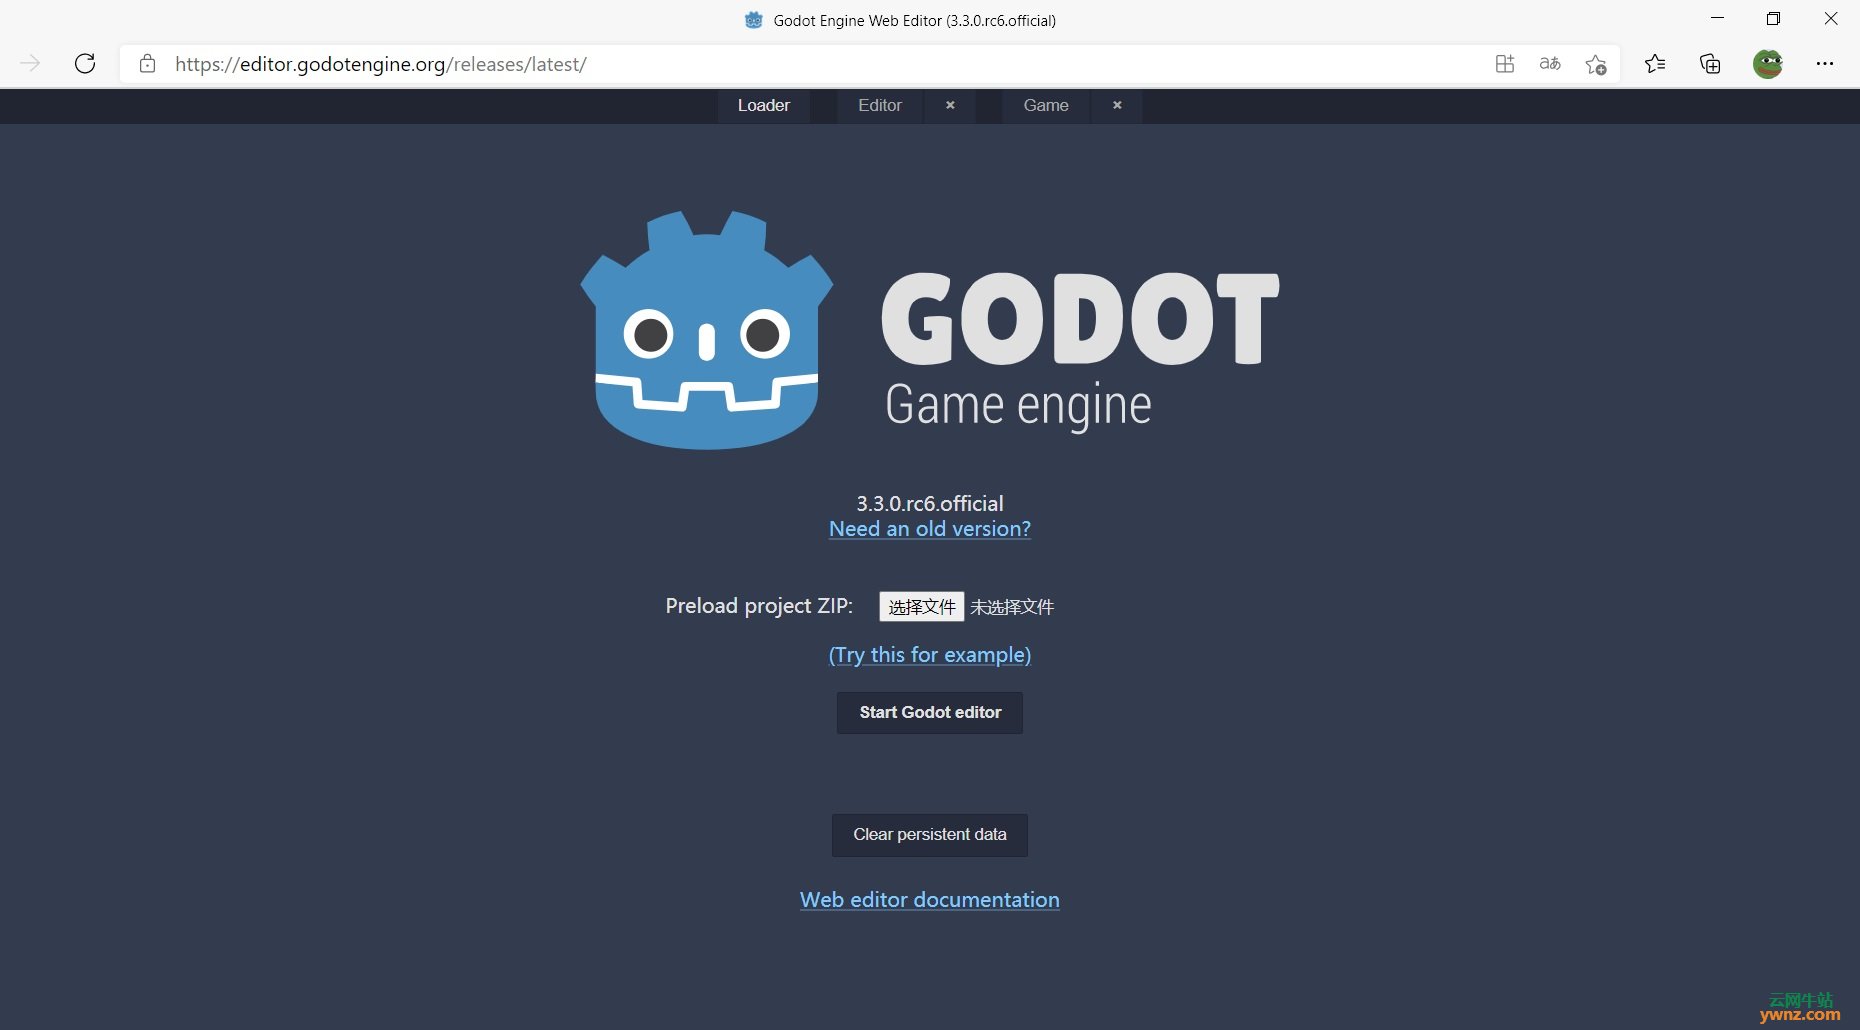 游戏引擎Godot上线Web版本，附Godot引擎Web版地址及使用介绍